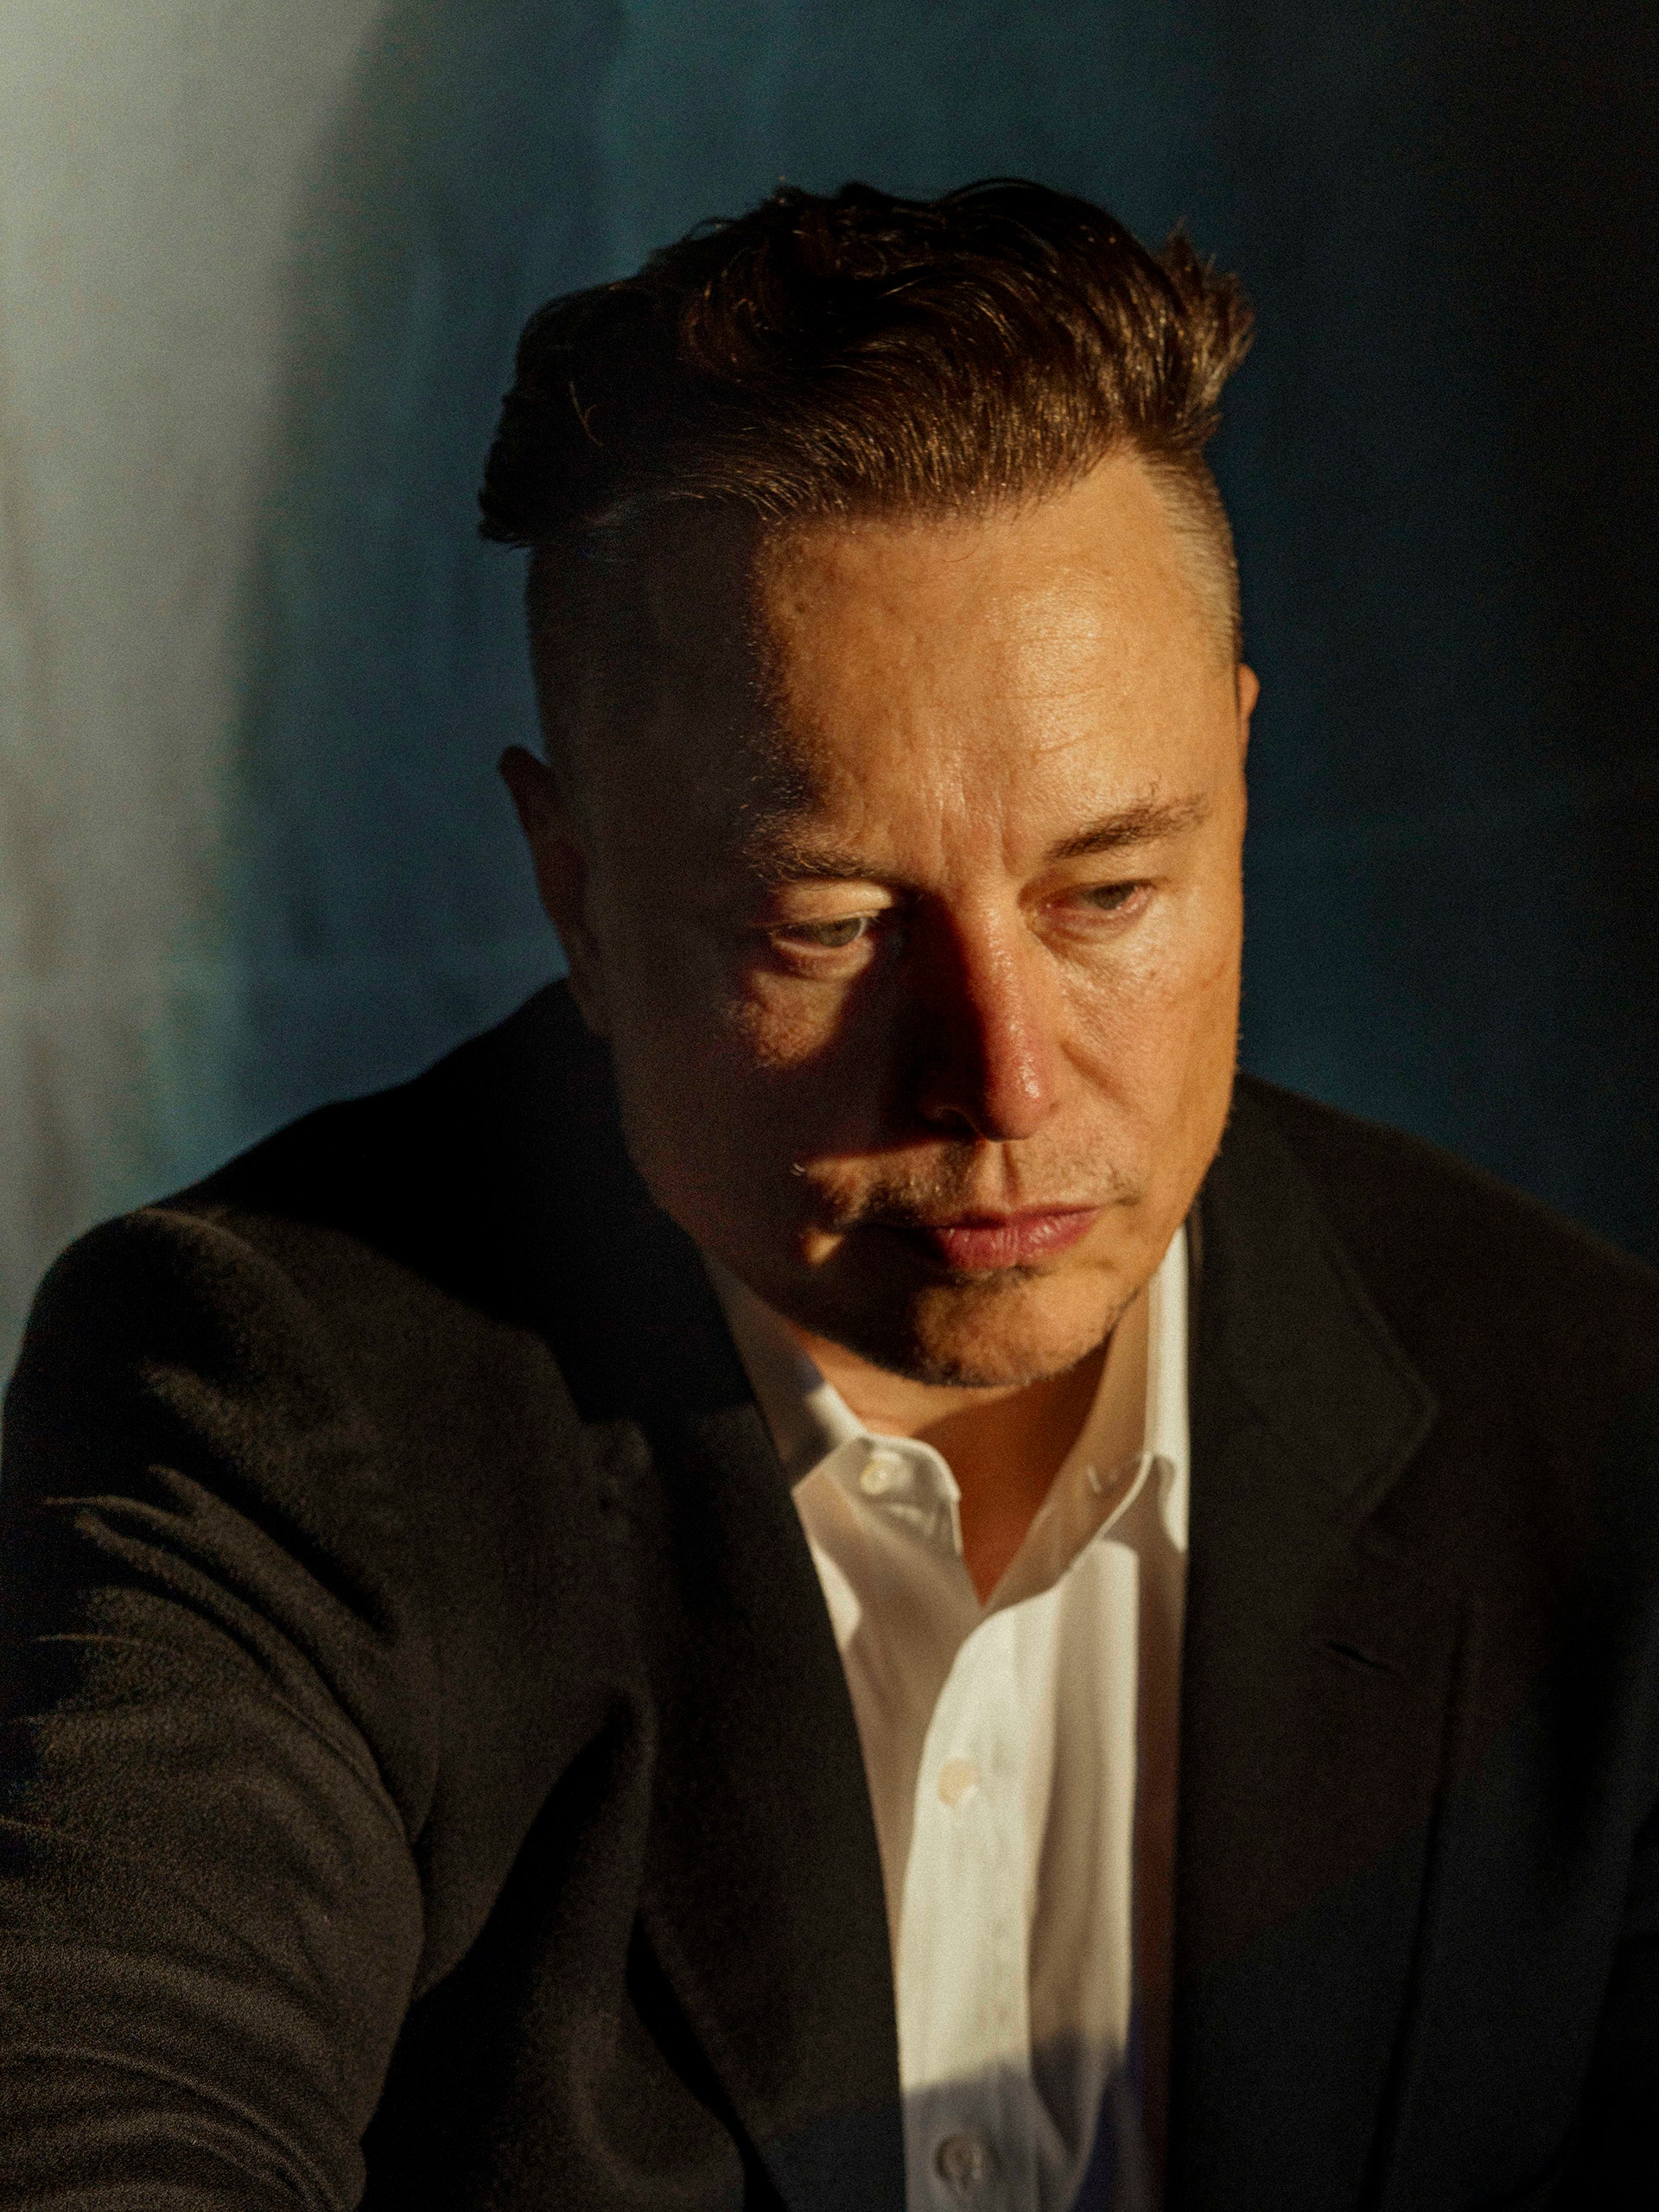 Twitter: Cỗ máy đầy lỗi của Elon Musk đang vận hành với sự chống đối, phá hoại từ chính nhân viên - Ảnh 1.